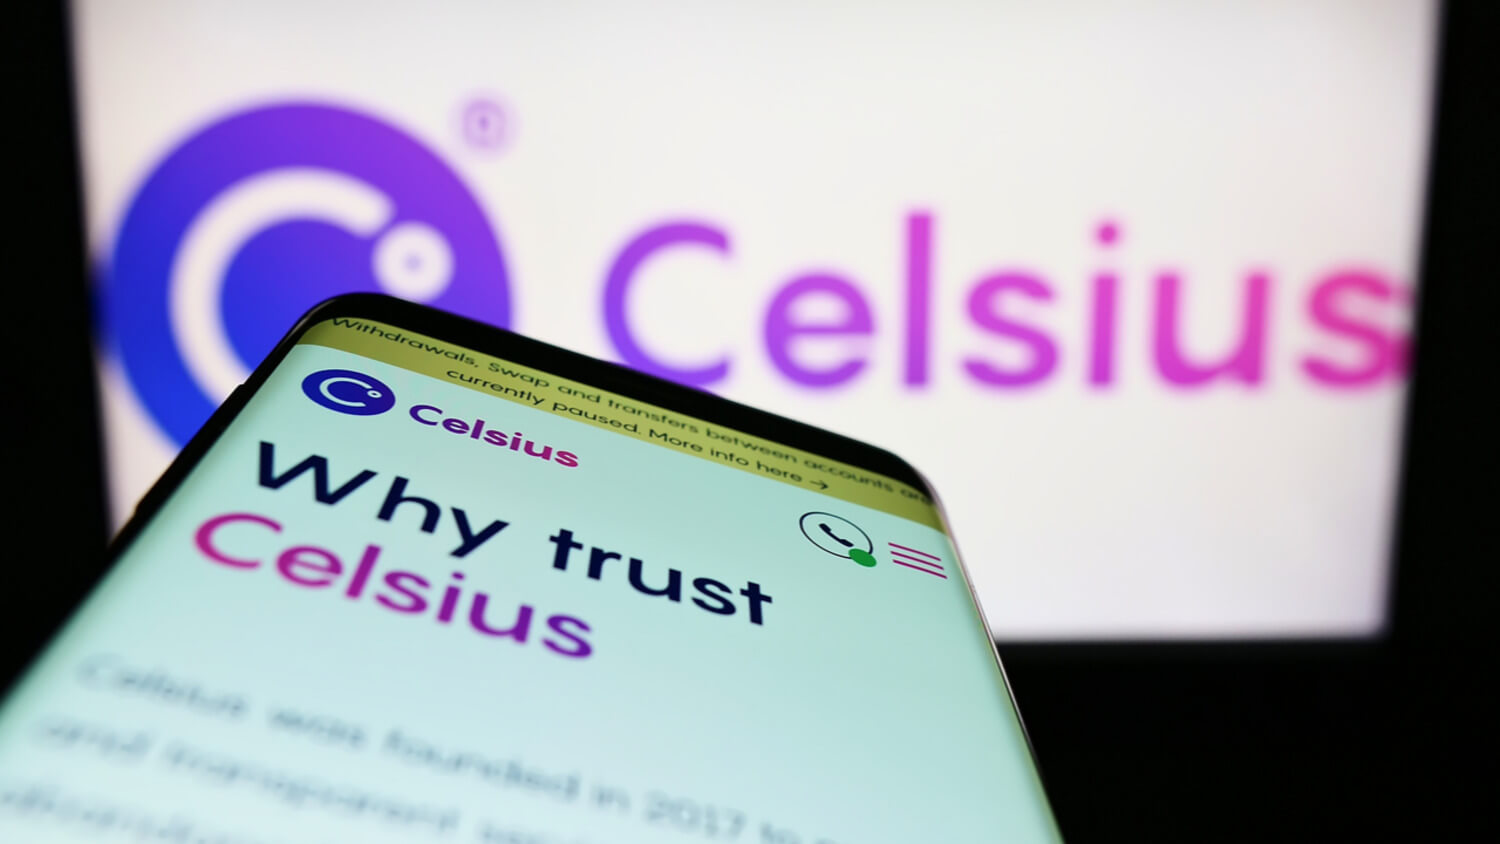 Против бывшего руководителя криптоплатформы Celsius подали судебный иск. В чём его обвиняют? Логотип лендинг-платформы Celsius. Фото.